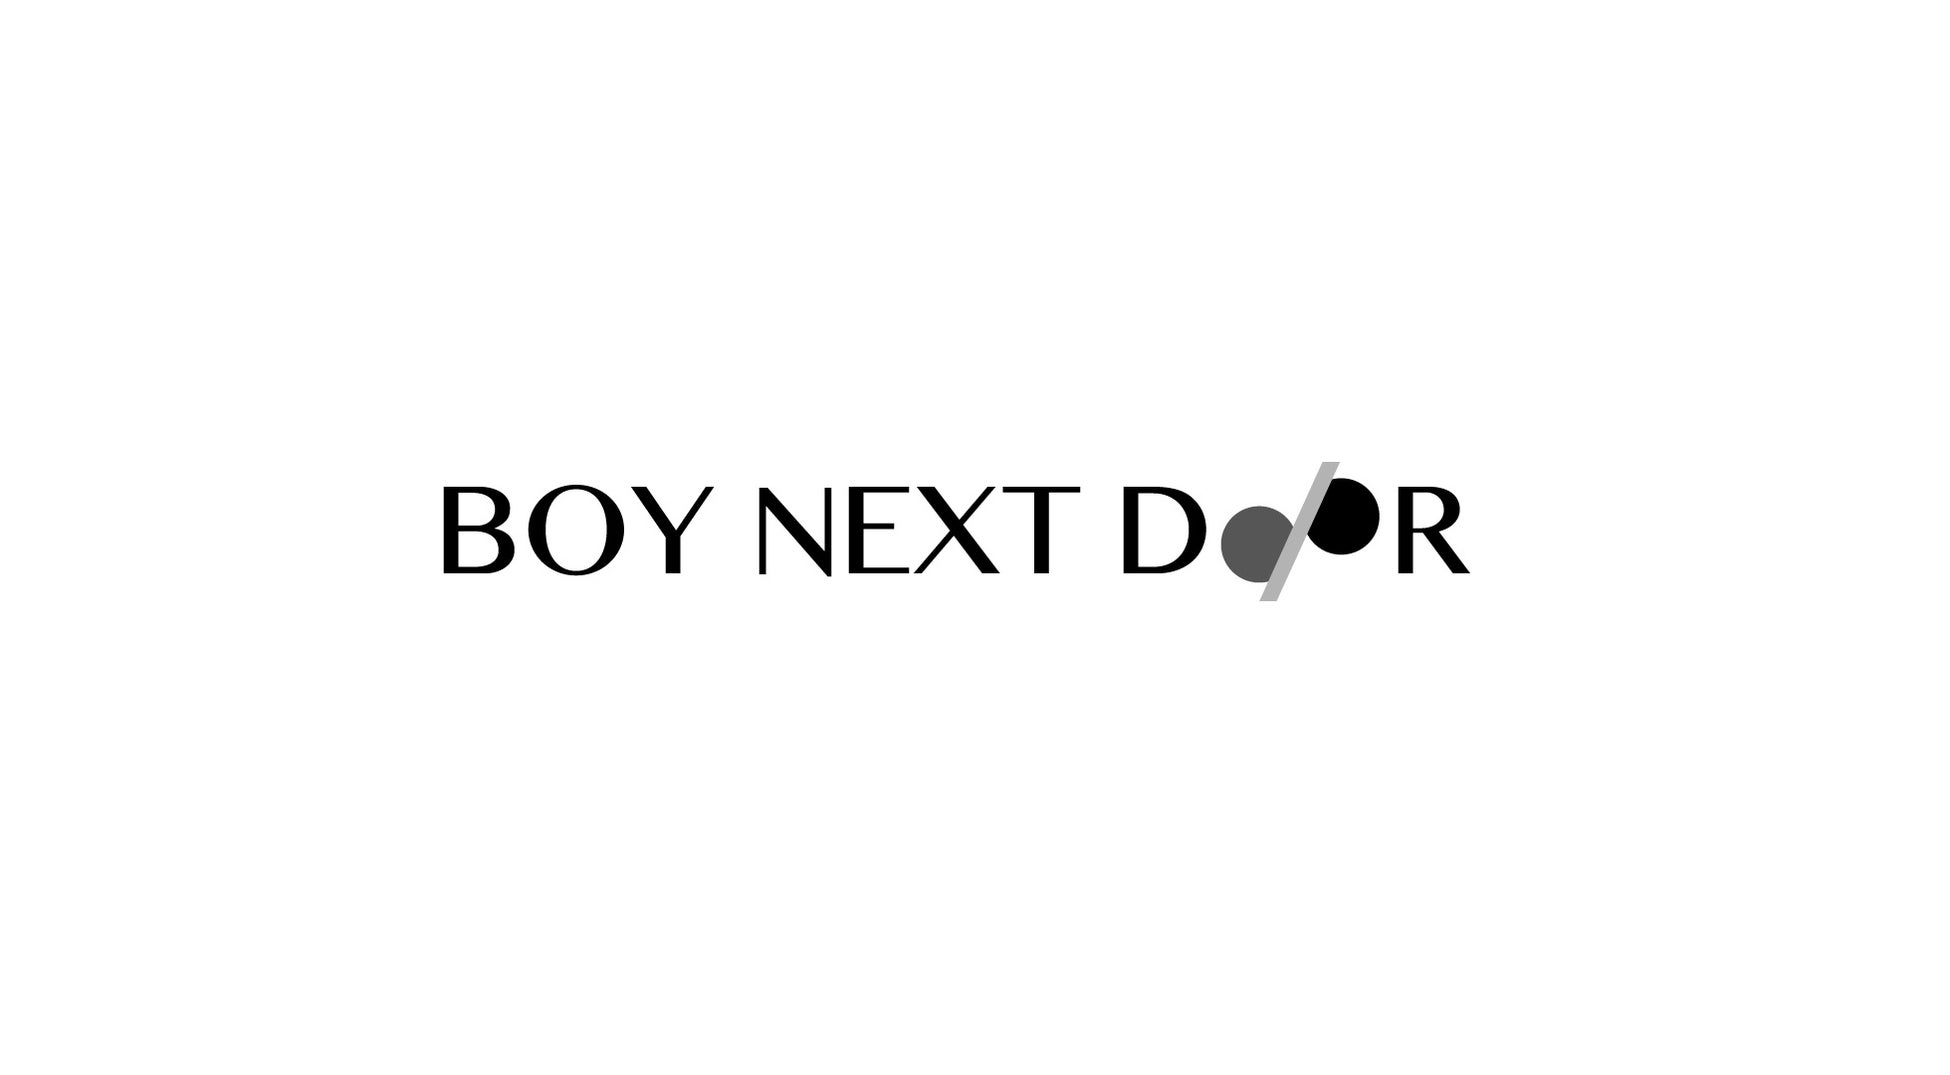 株式会社Coupeが「株式会社BOY NEXT DOOR」へ社名変更。新経営体制にて総額1億円を資金調達、エンタメスタートアップとして第2創業フェーズへのサブ画像1